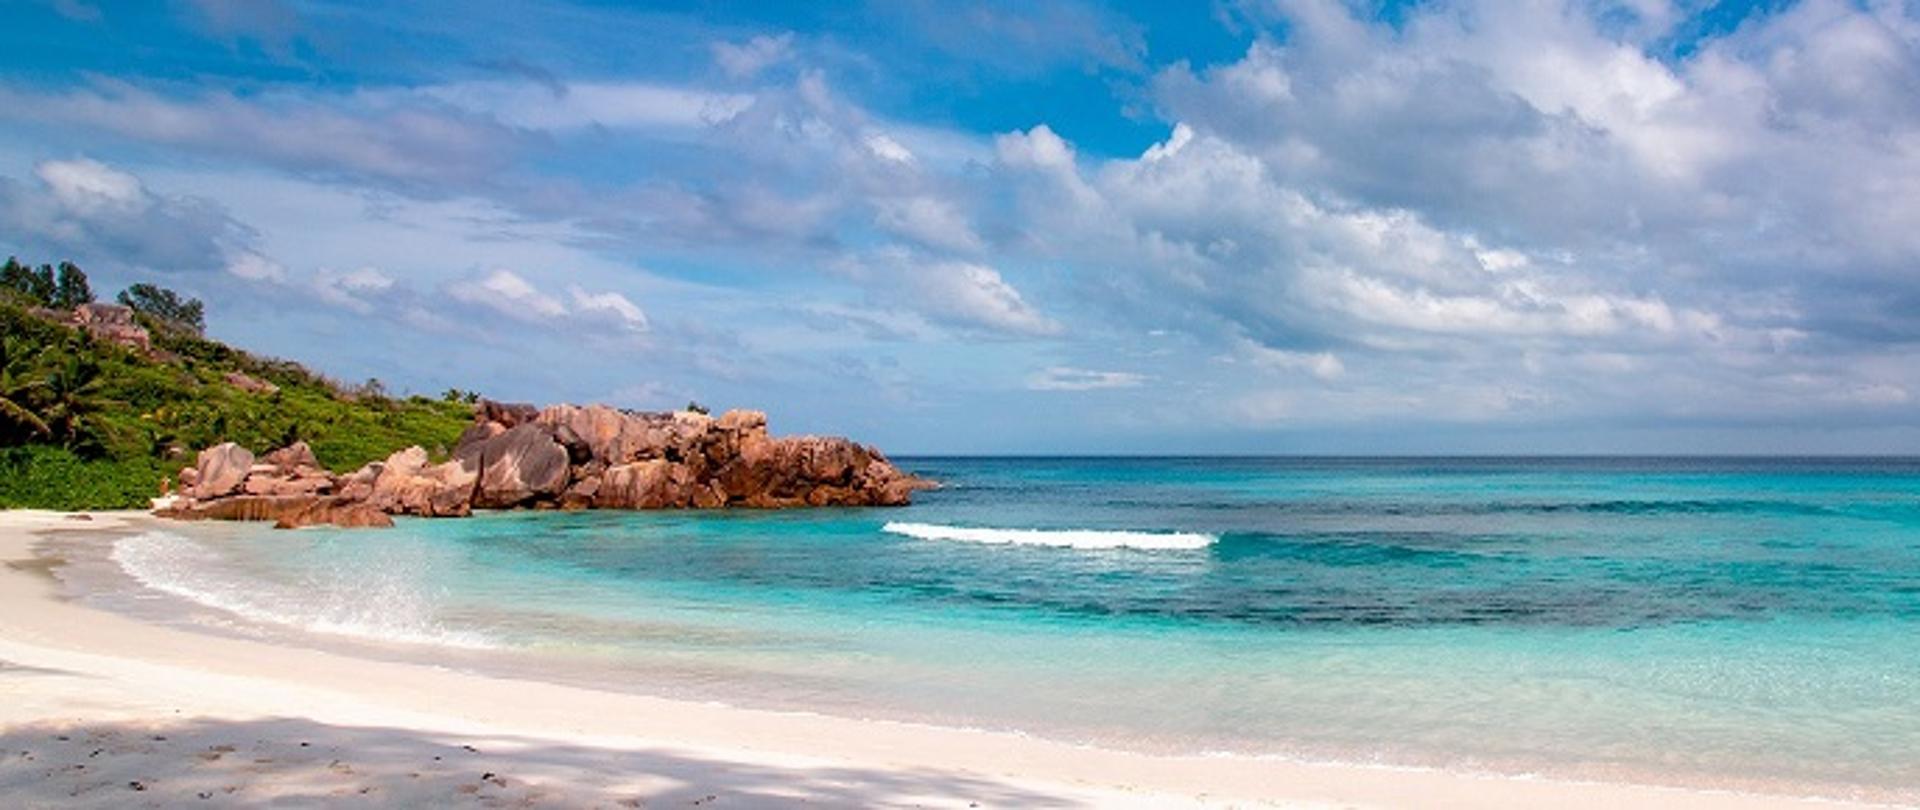 Pusta plaża na Seszelach z lazurowym kolorem wody i palmami na brzegu. 